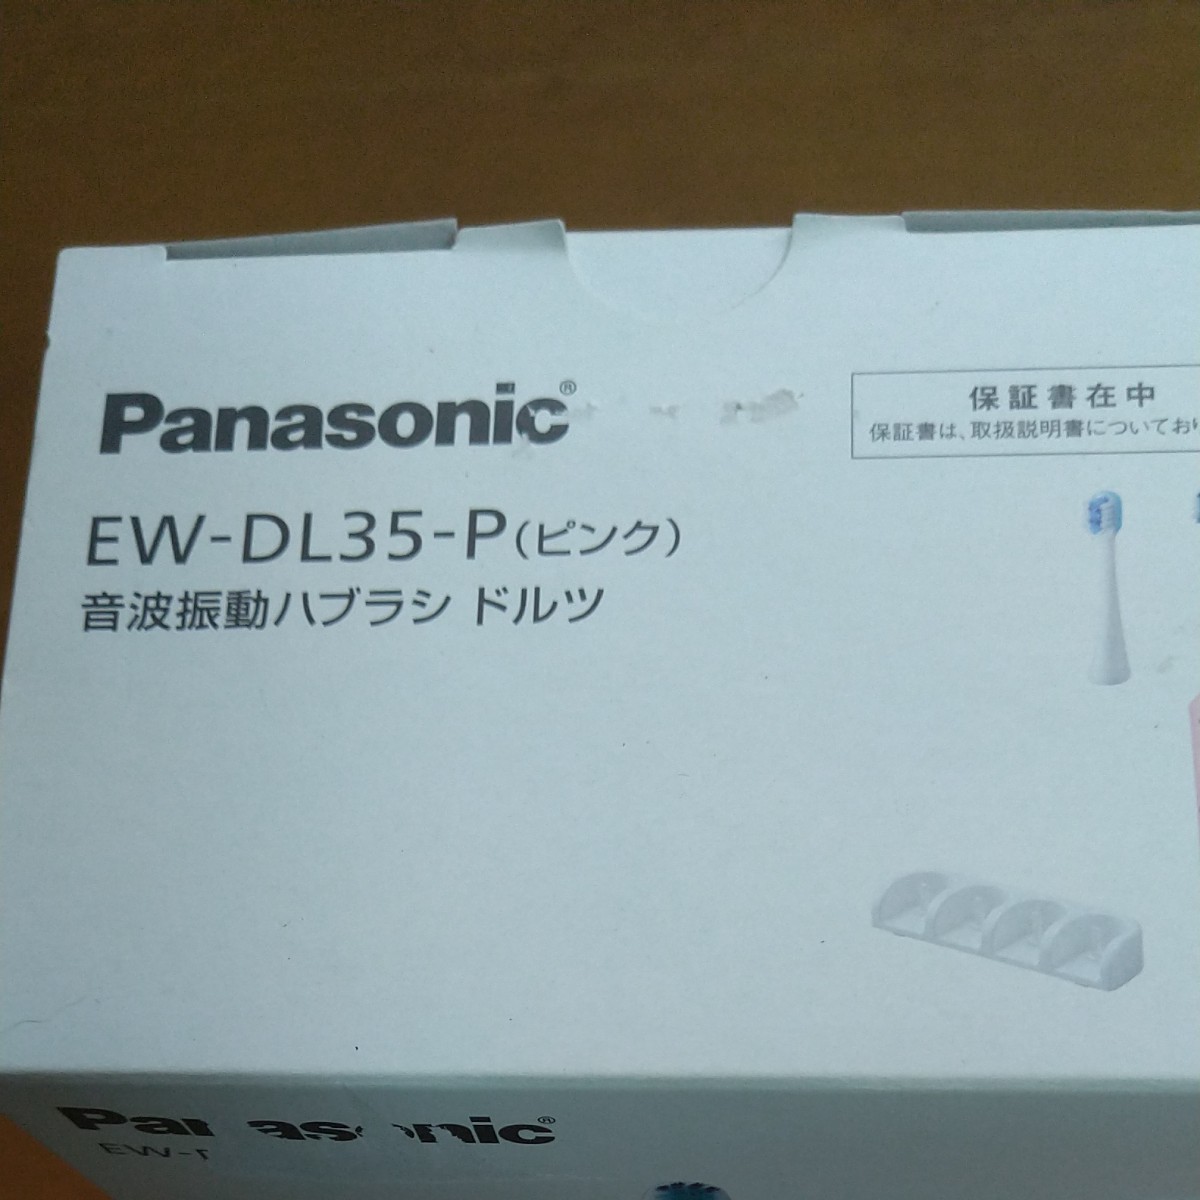 【訳あり①】音波振動ハブラシ ドルツ EW-DL35-P （ピンク） Doltz 　パナソニック電動歯ブラシドルツ